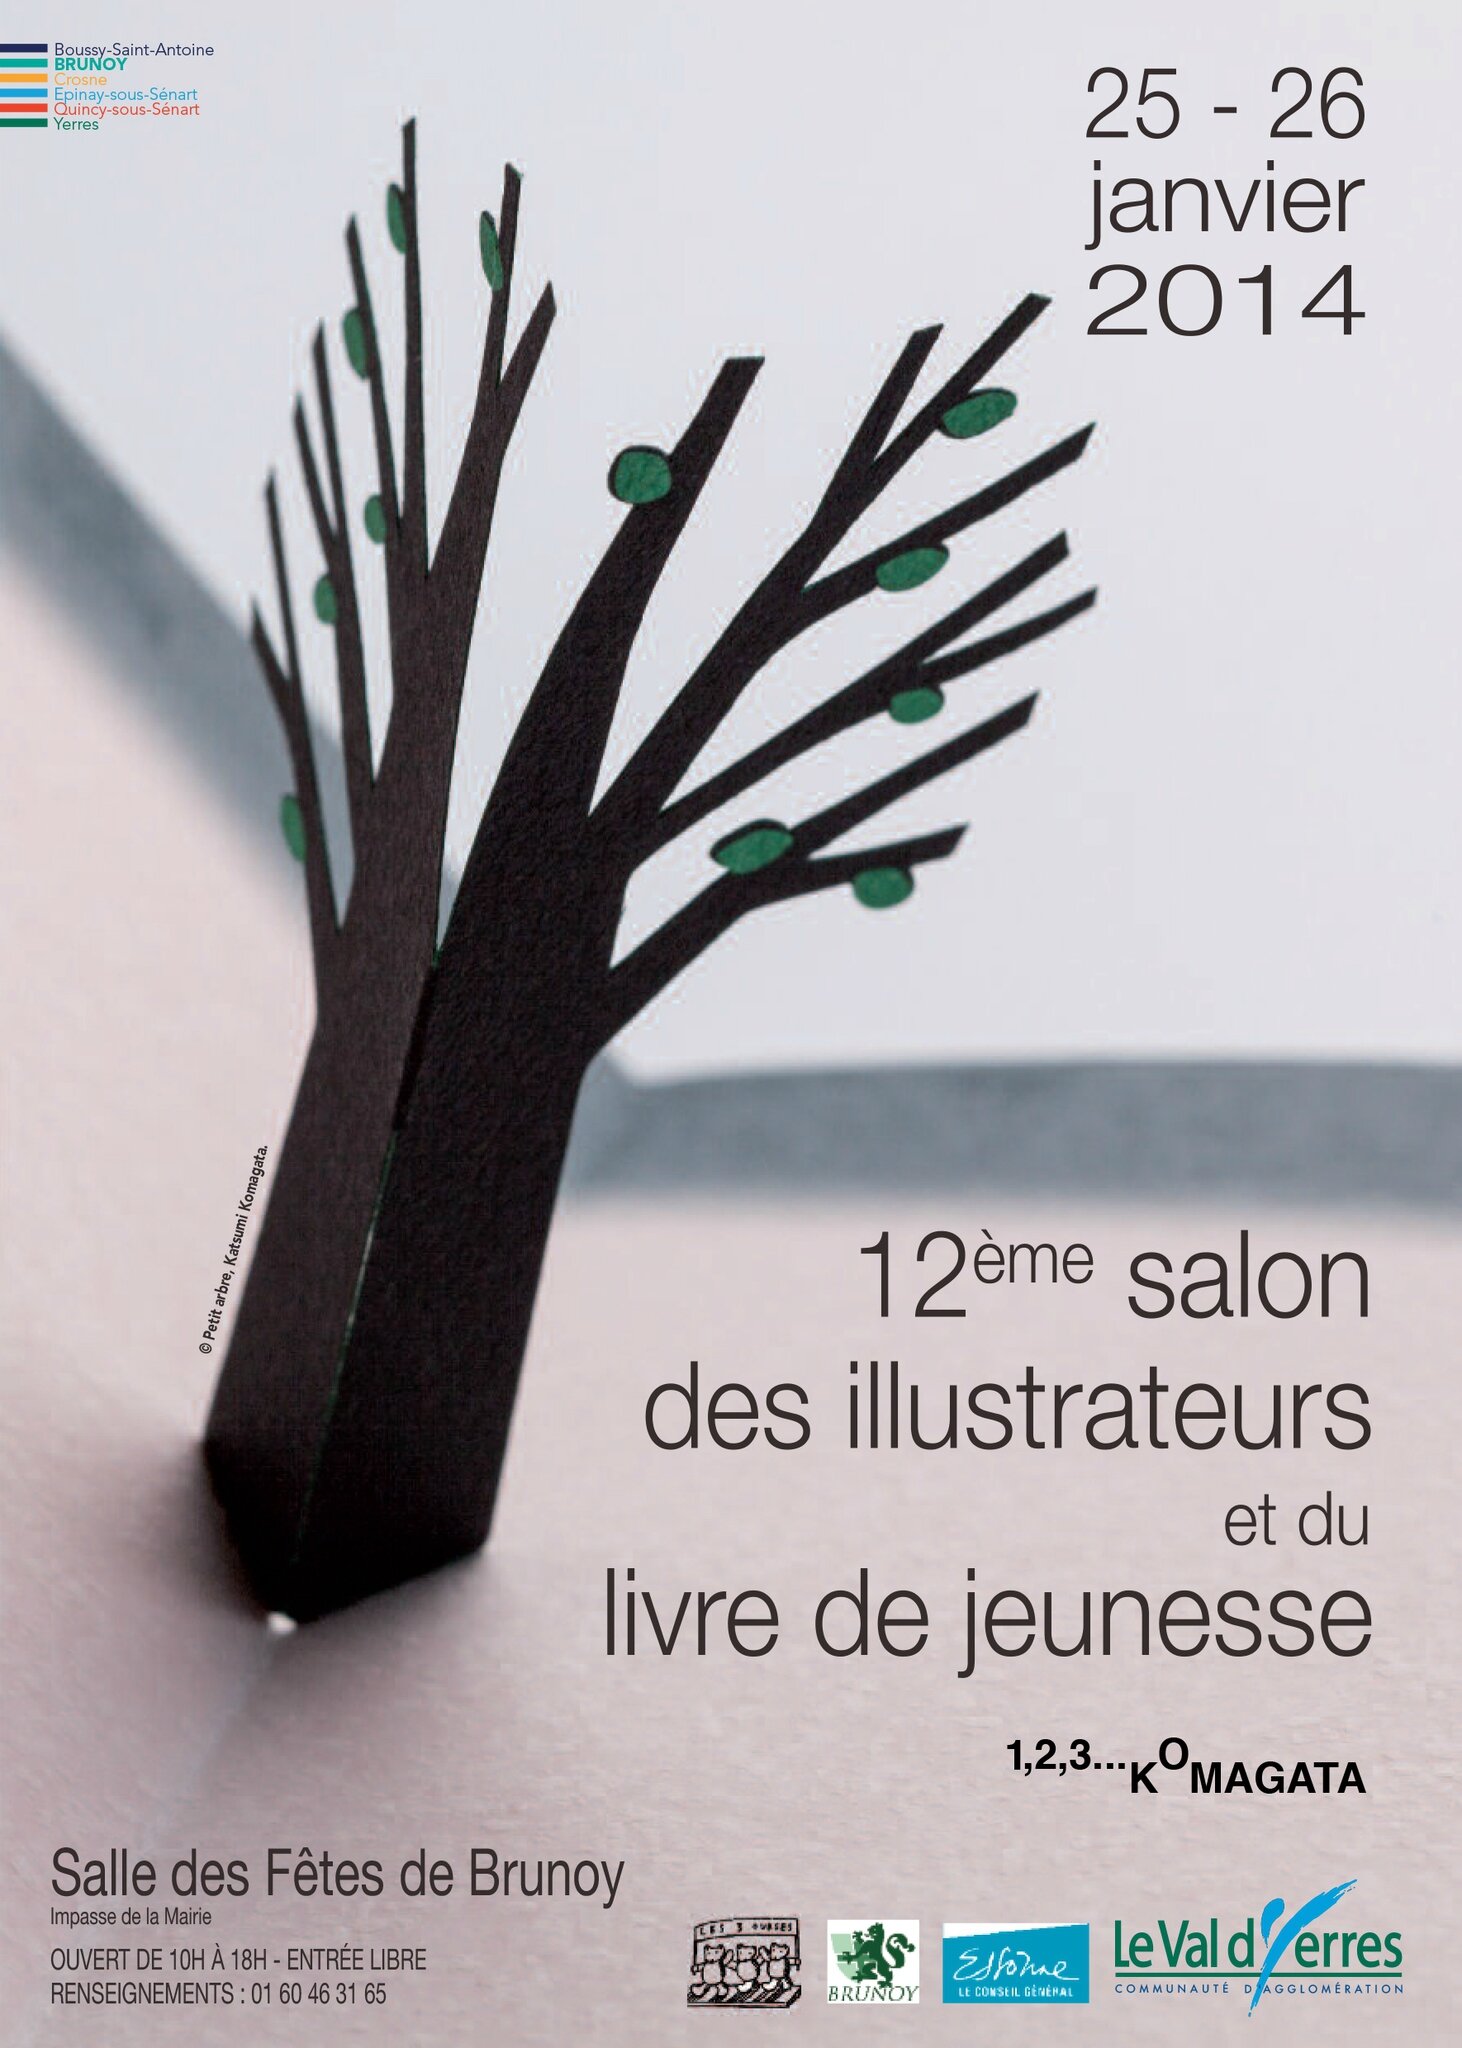 salon-des-illustrateurs-2014-1